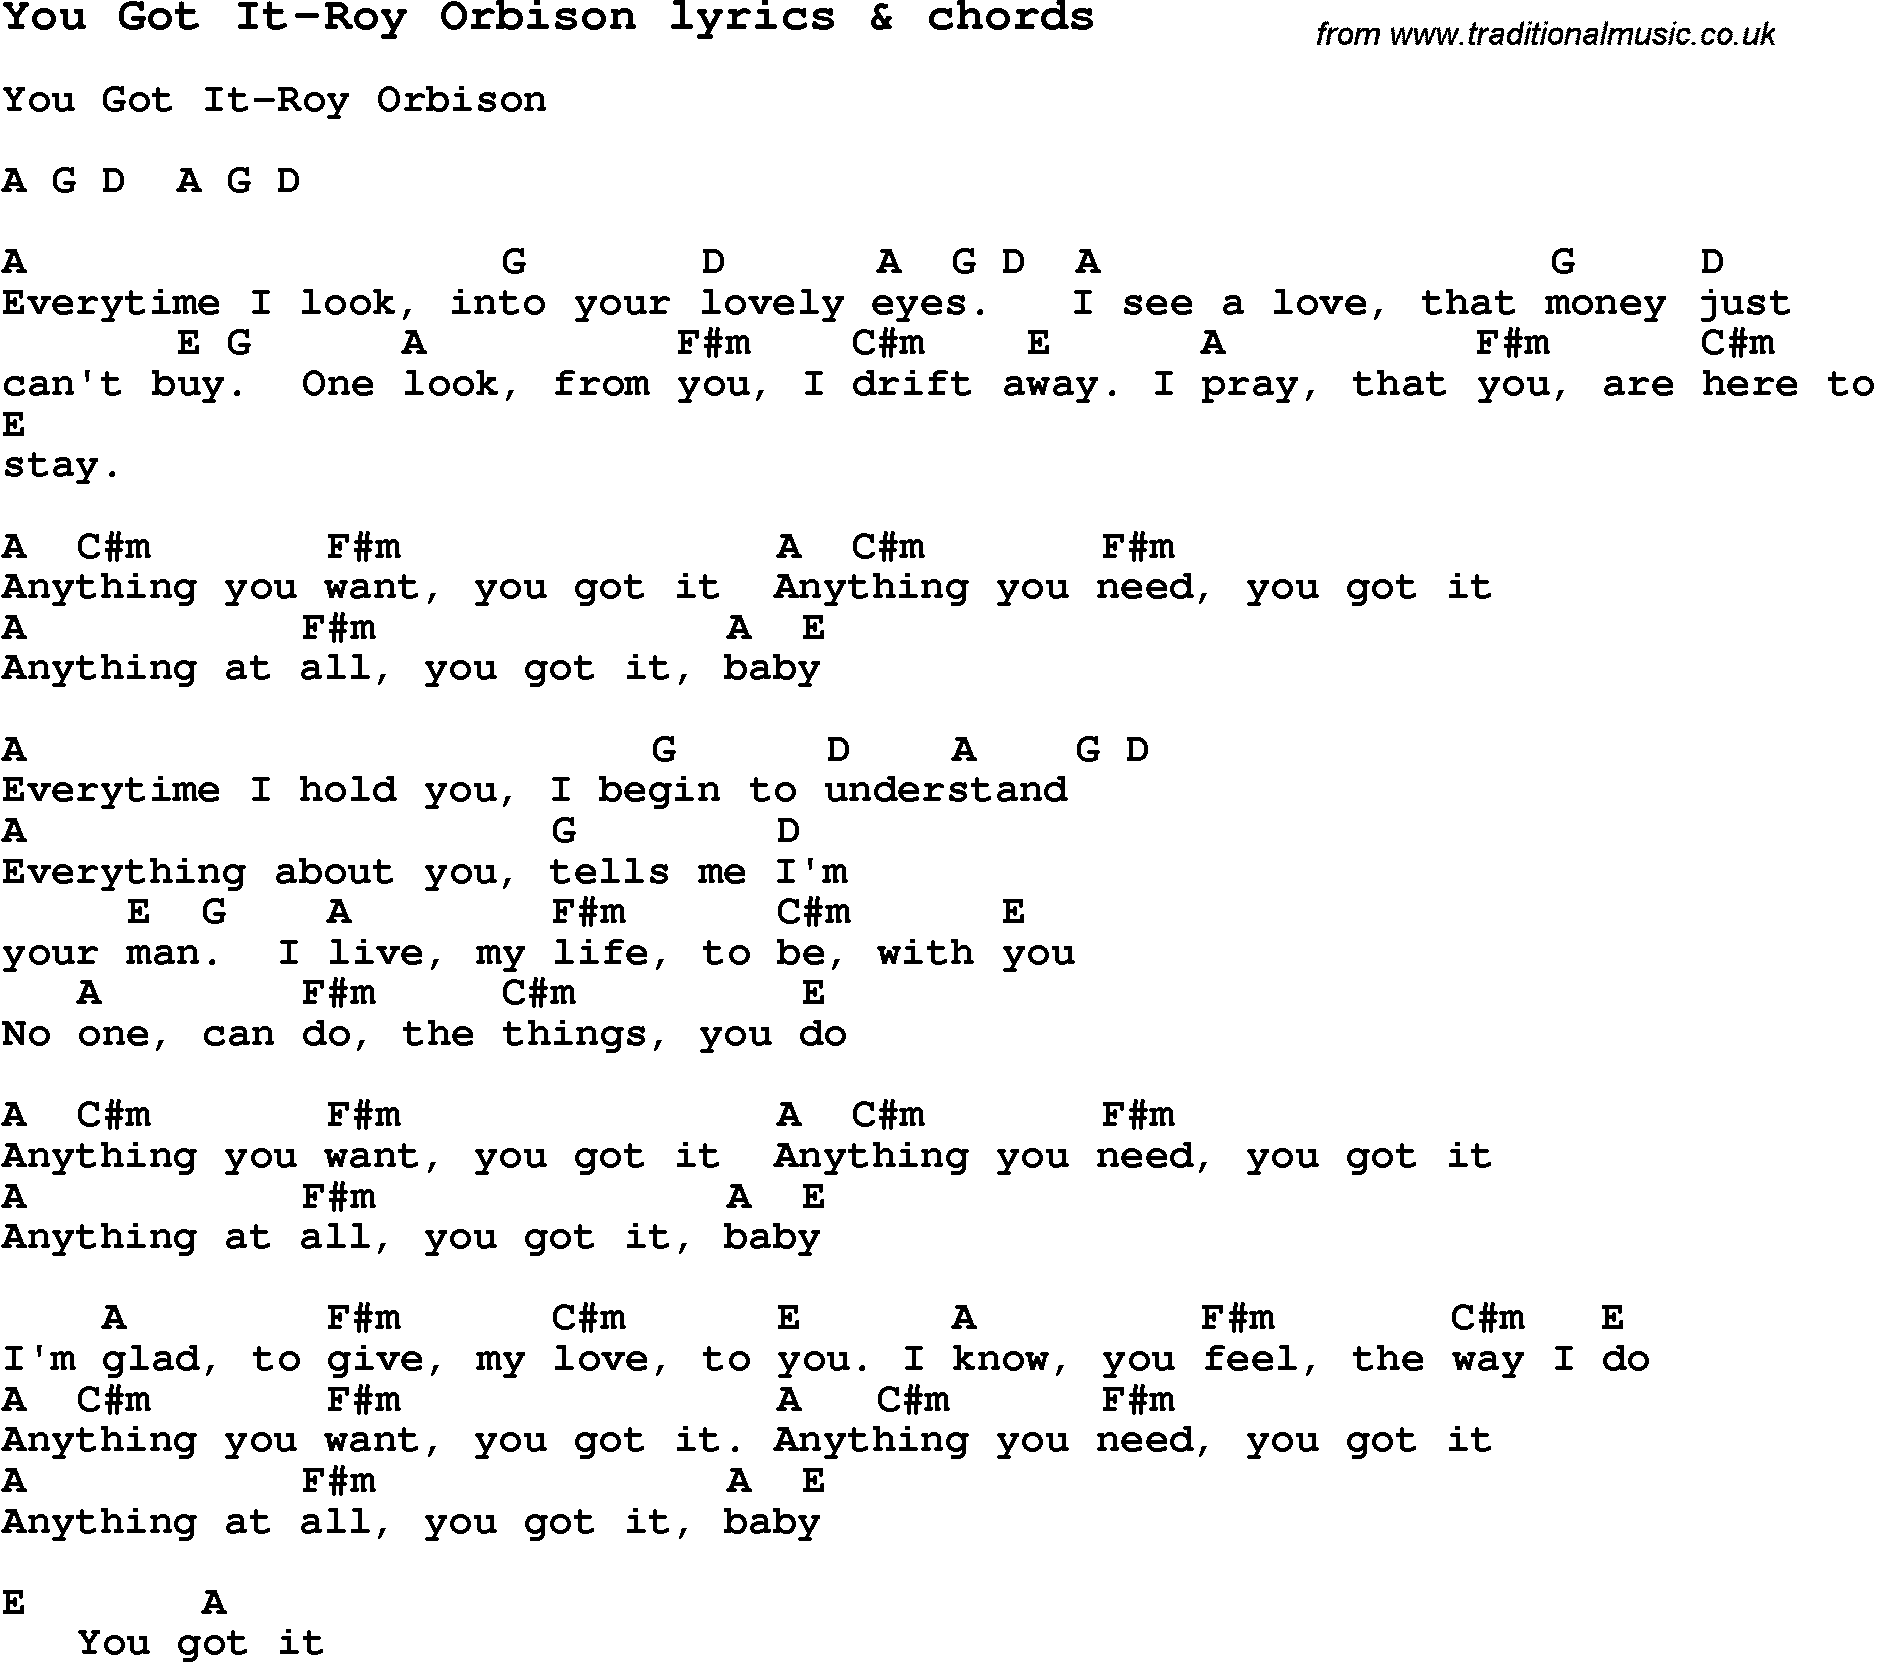 Love Song Lyrics for: You Got It-Roy Orbison with chords for Ukulele, Guitar Banjo etc.